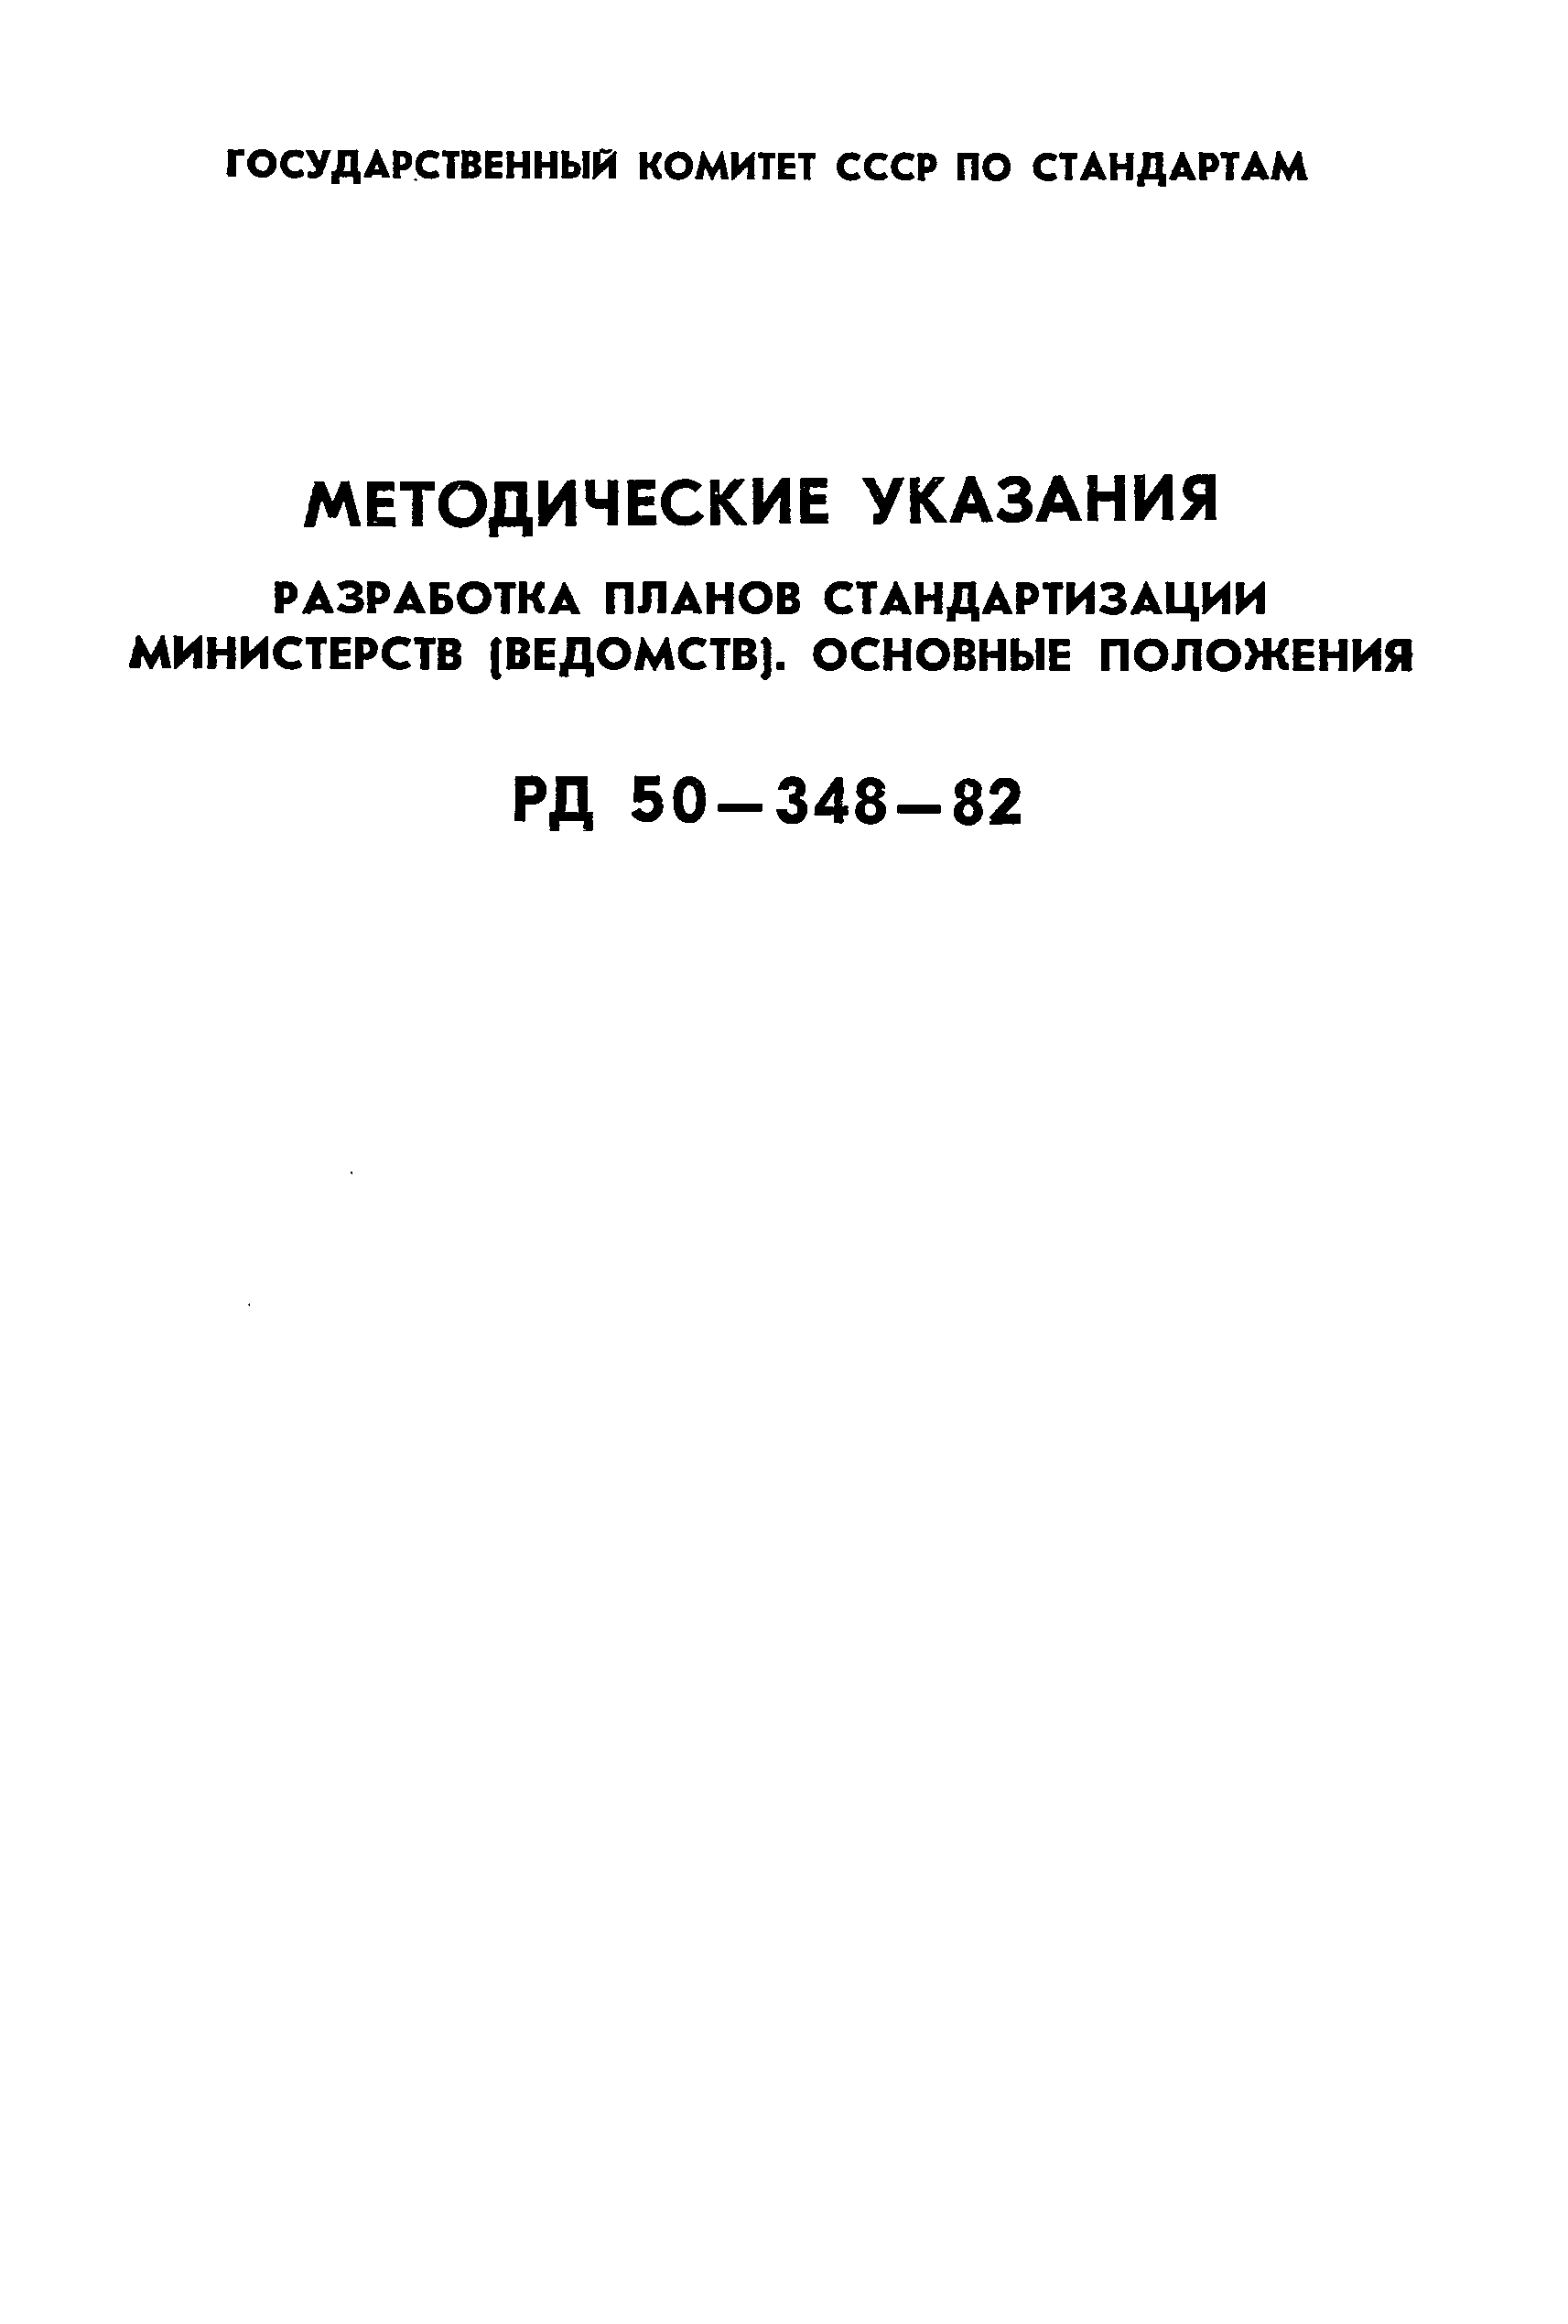 РД 50-348-82